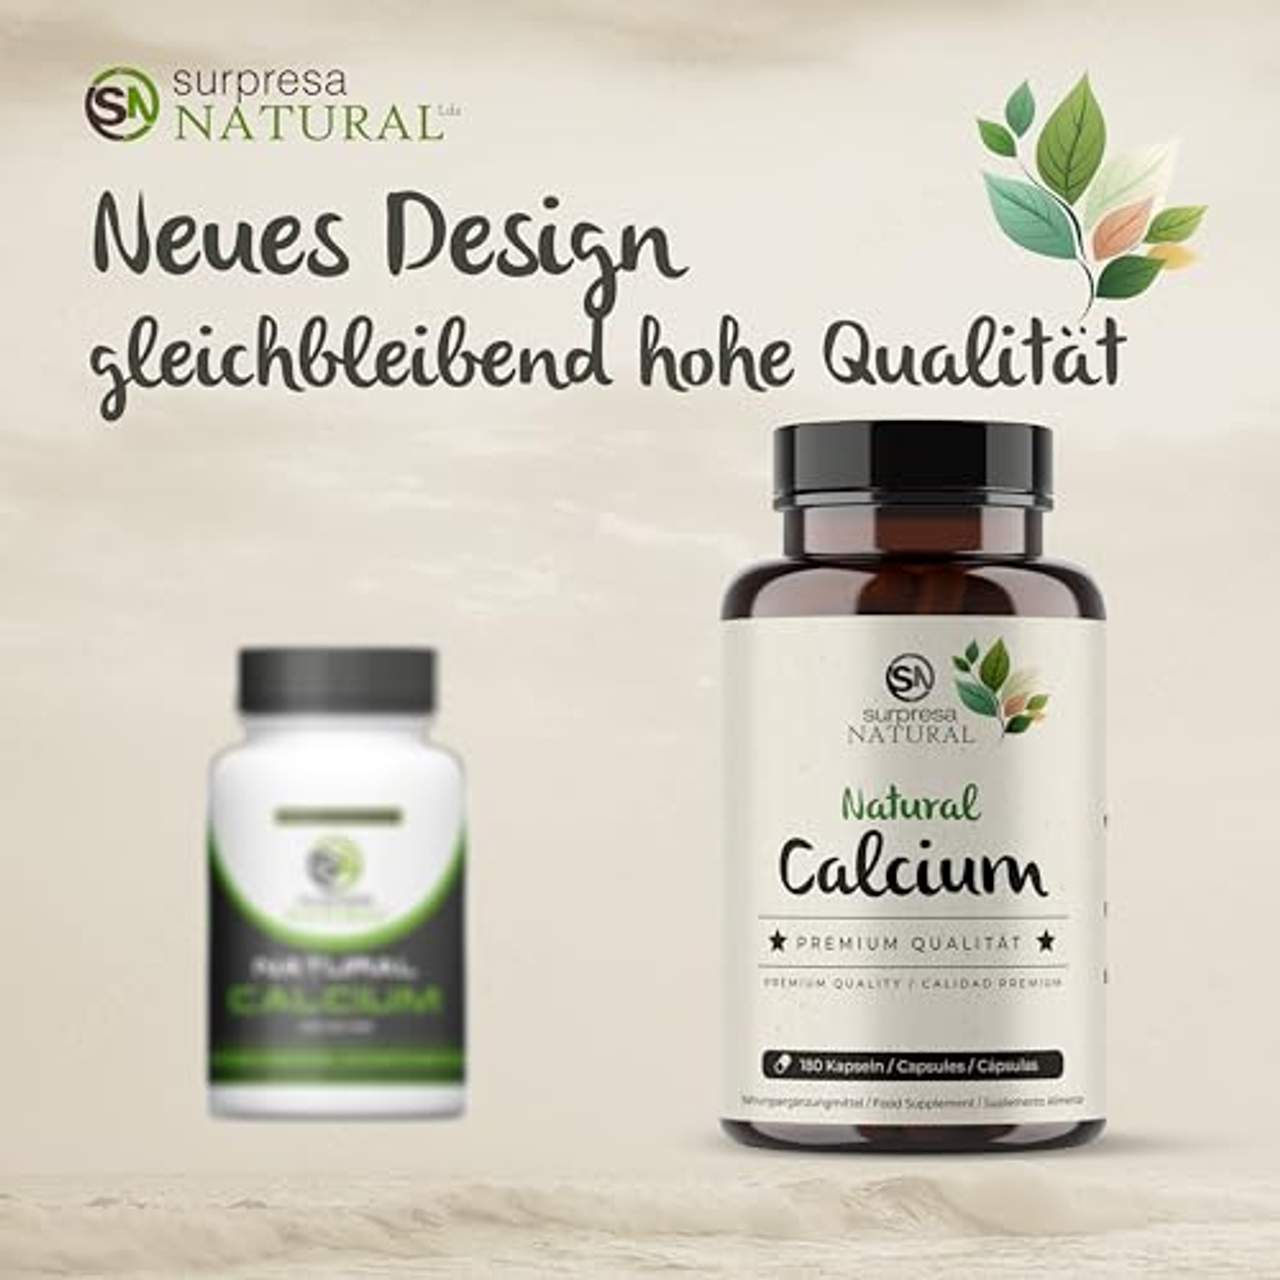 Surpresa Natural Natural Calcium 180 hochdosierte Kapseln